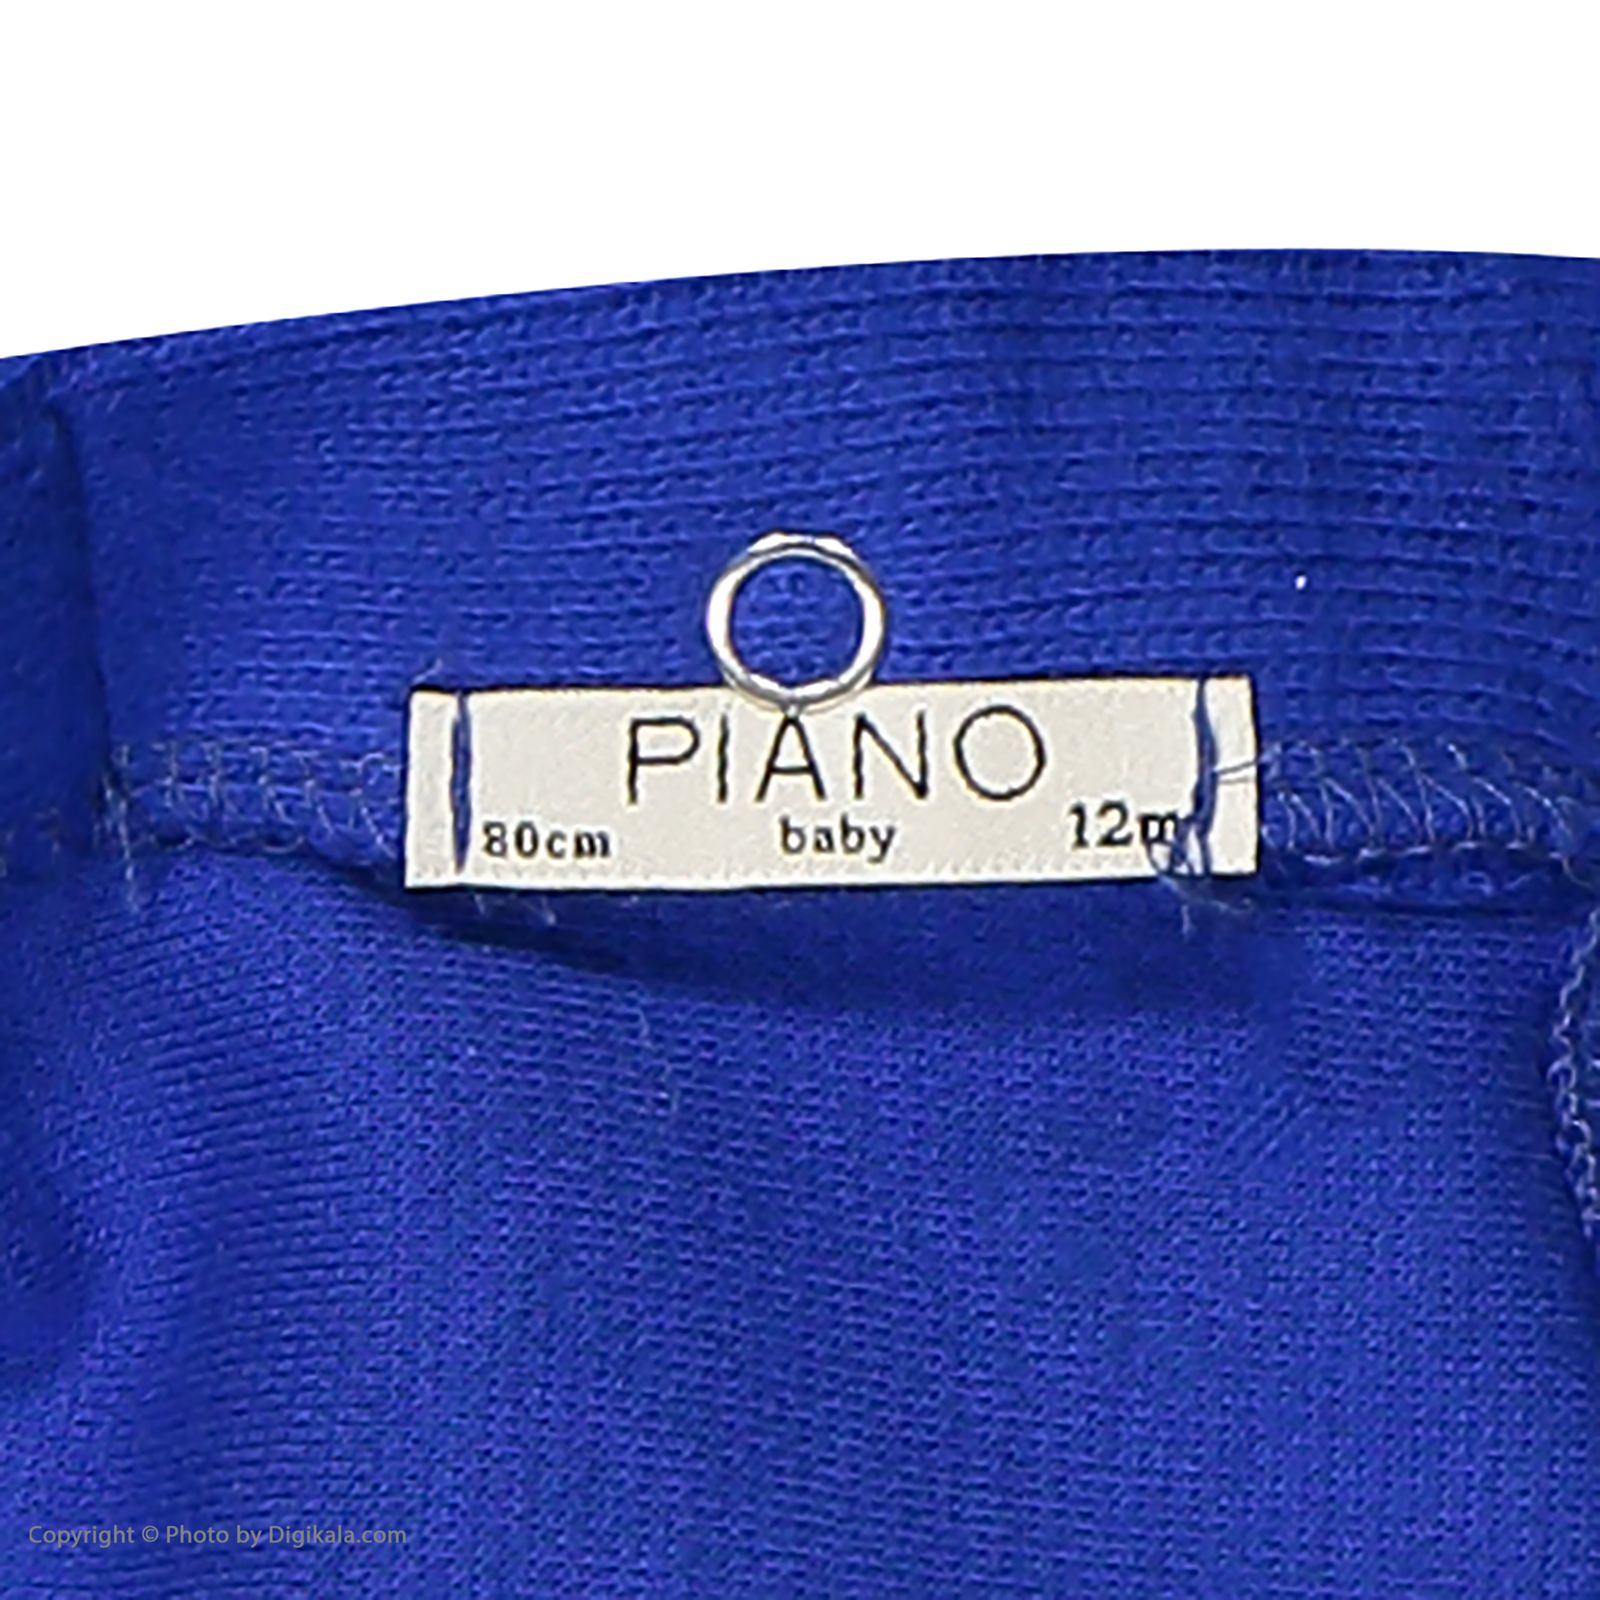 سویشرت نوزادی پیانو مدل 1009009901736-55 -  - 5